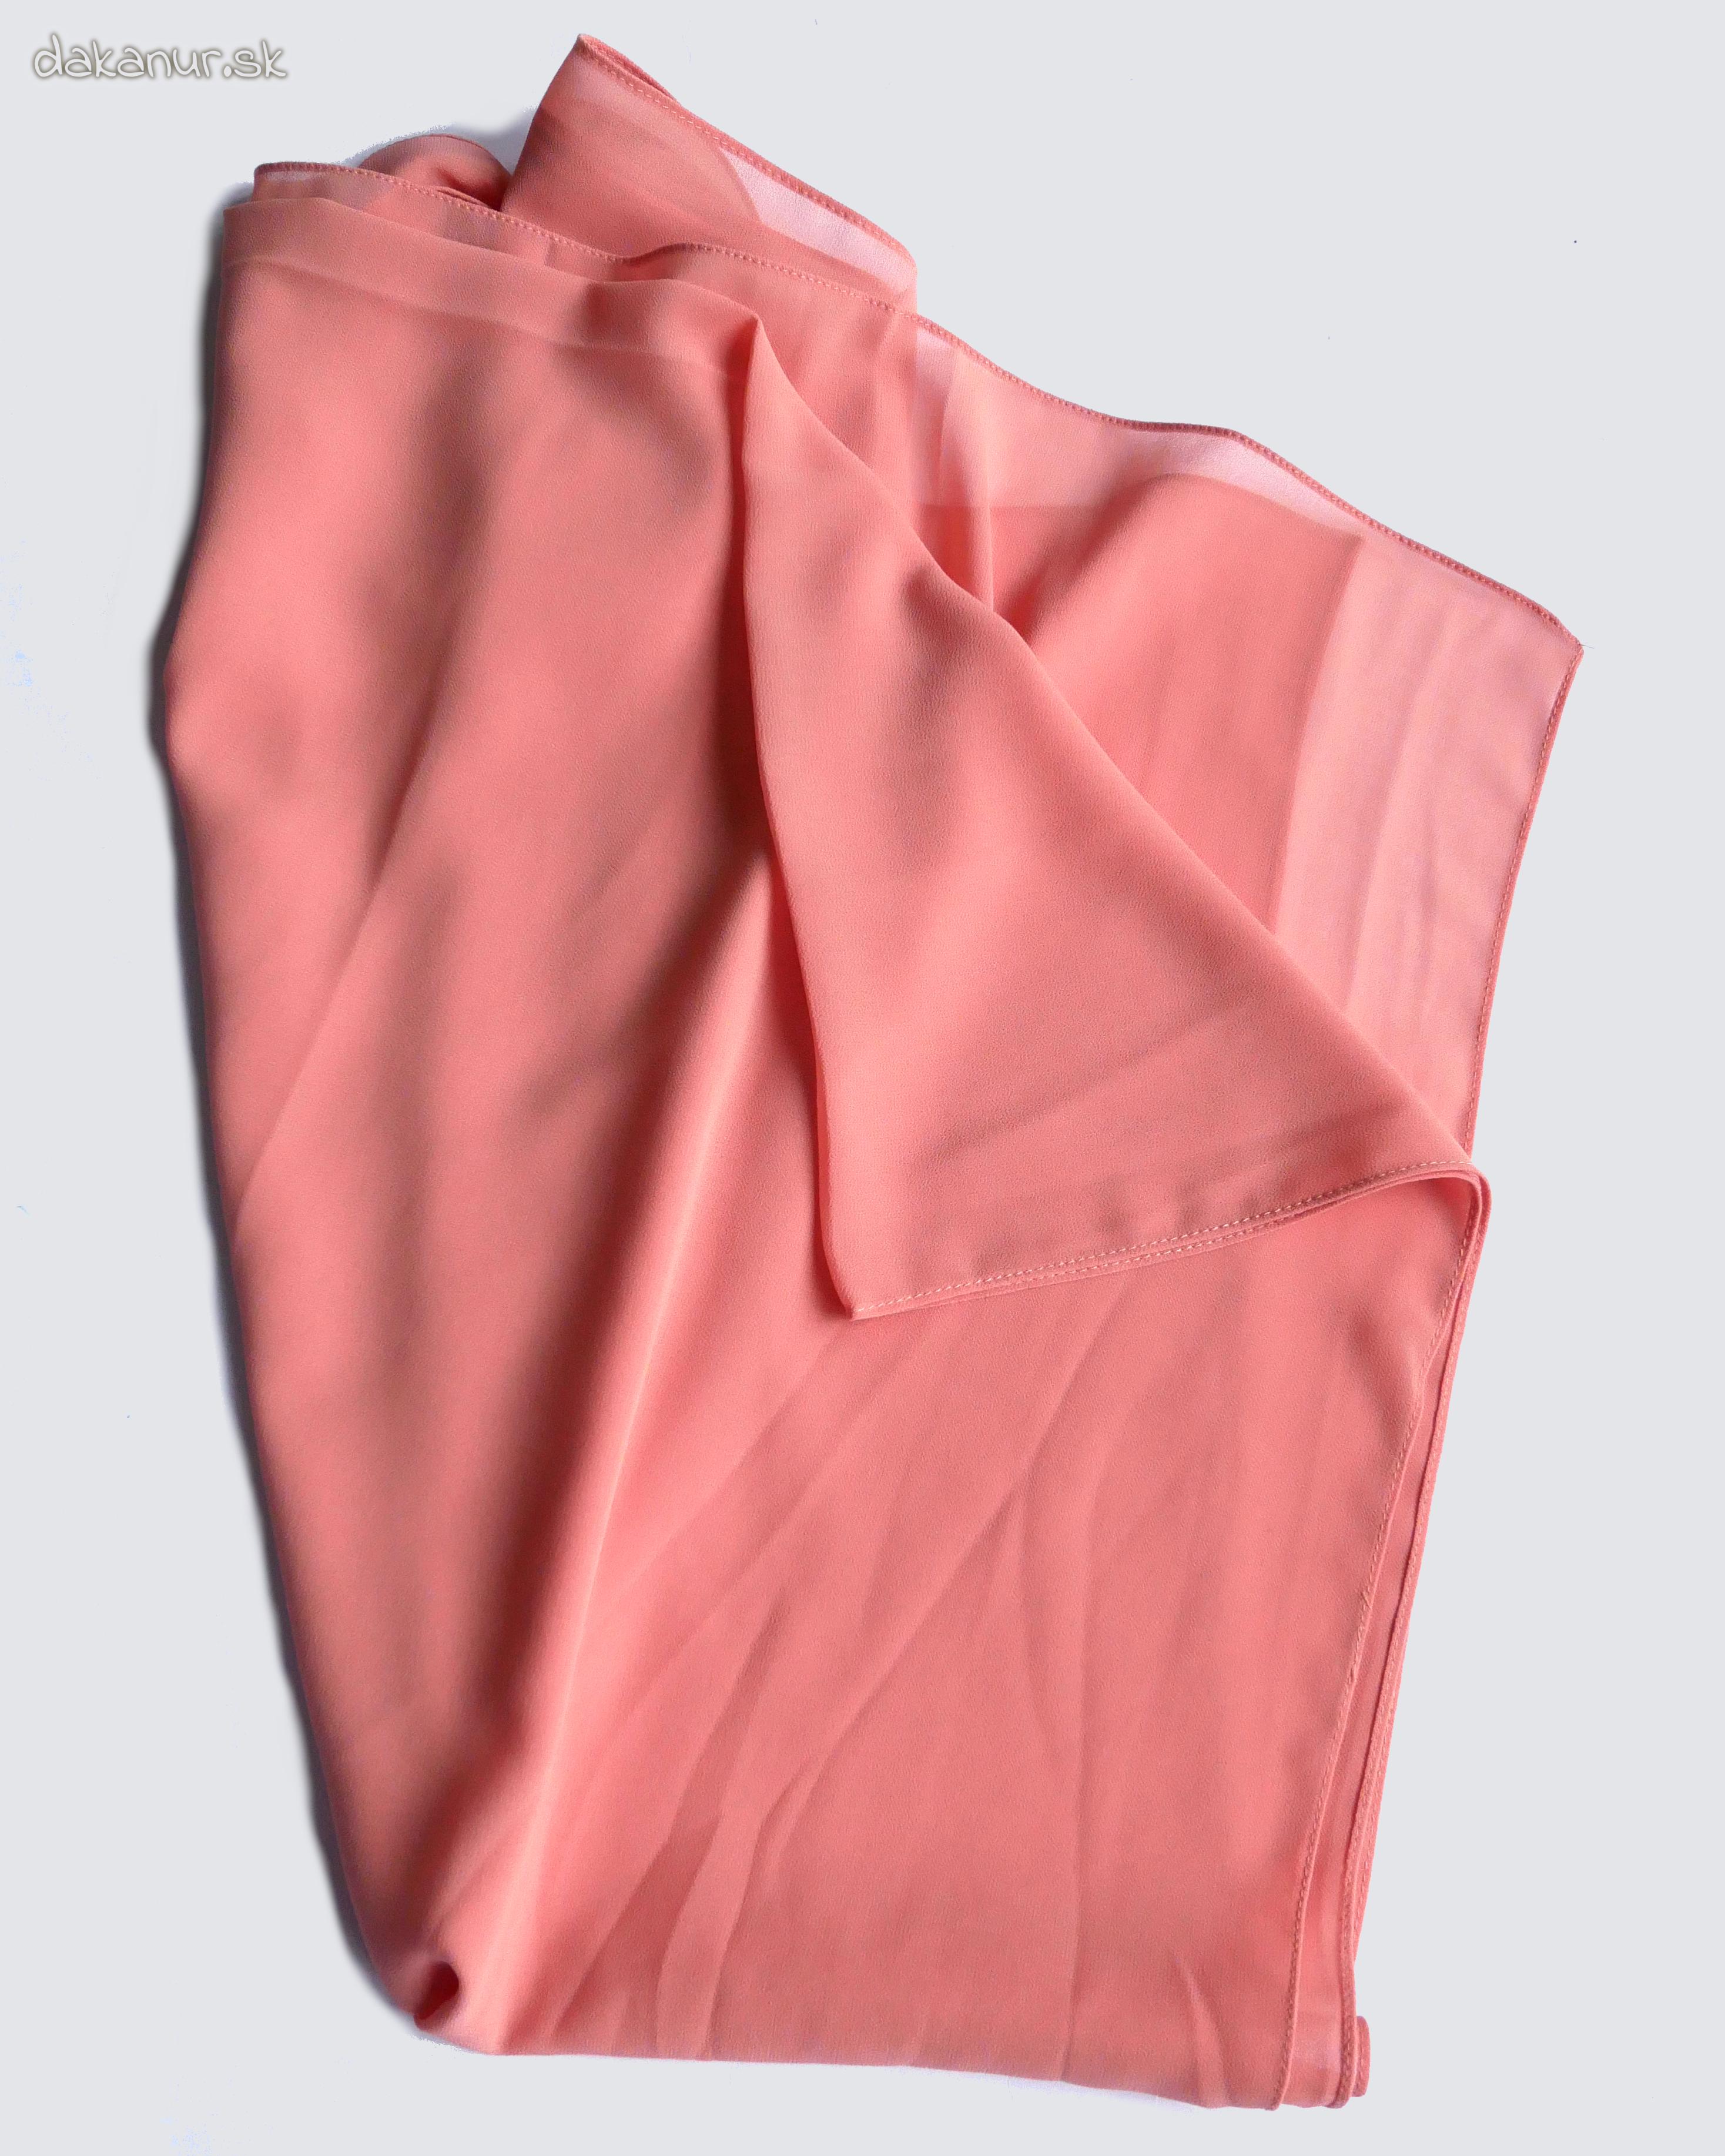 Marhuľový ružovkastý šifónový šál